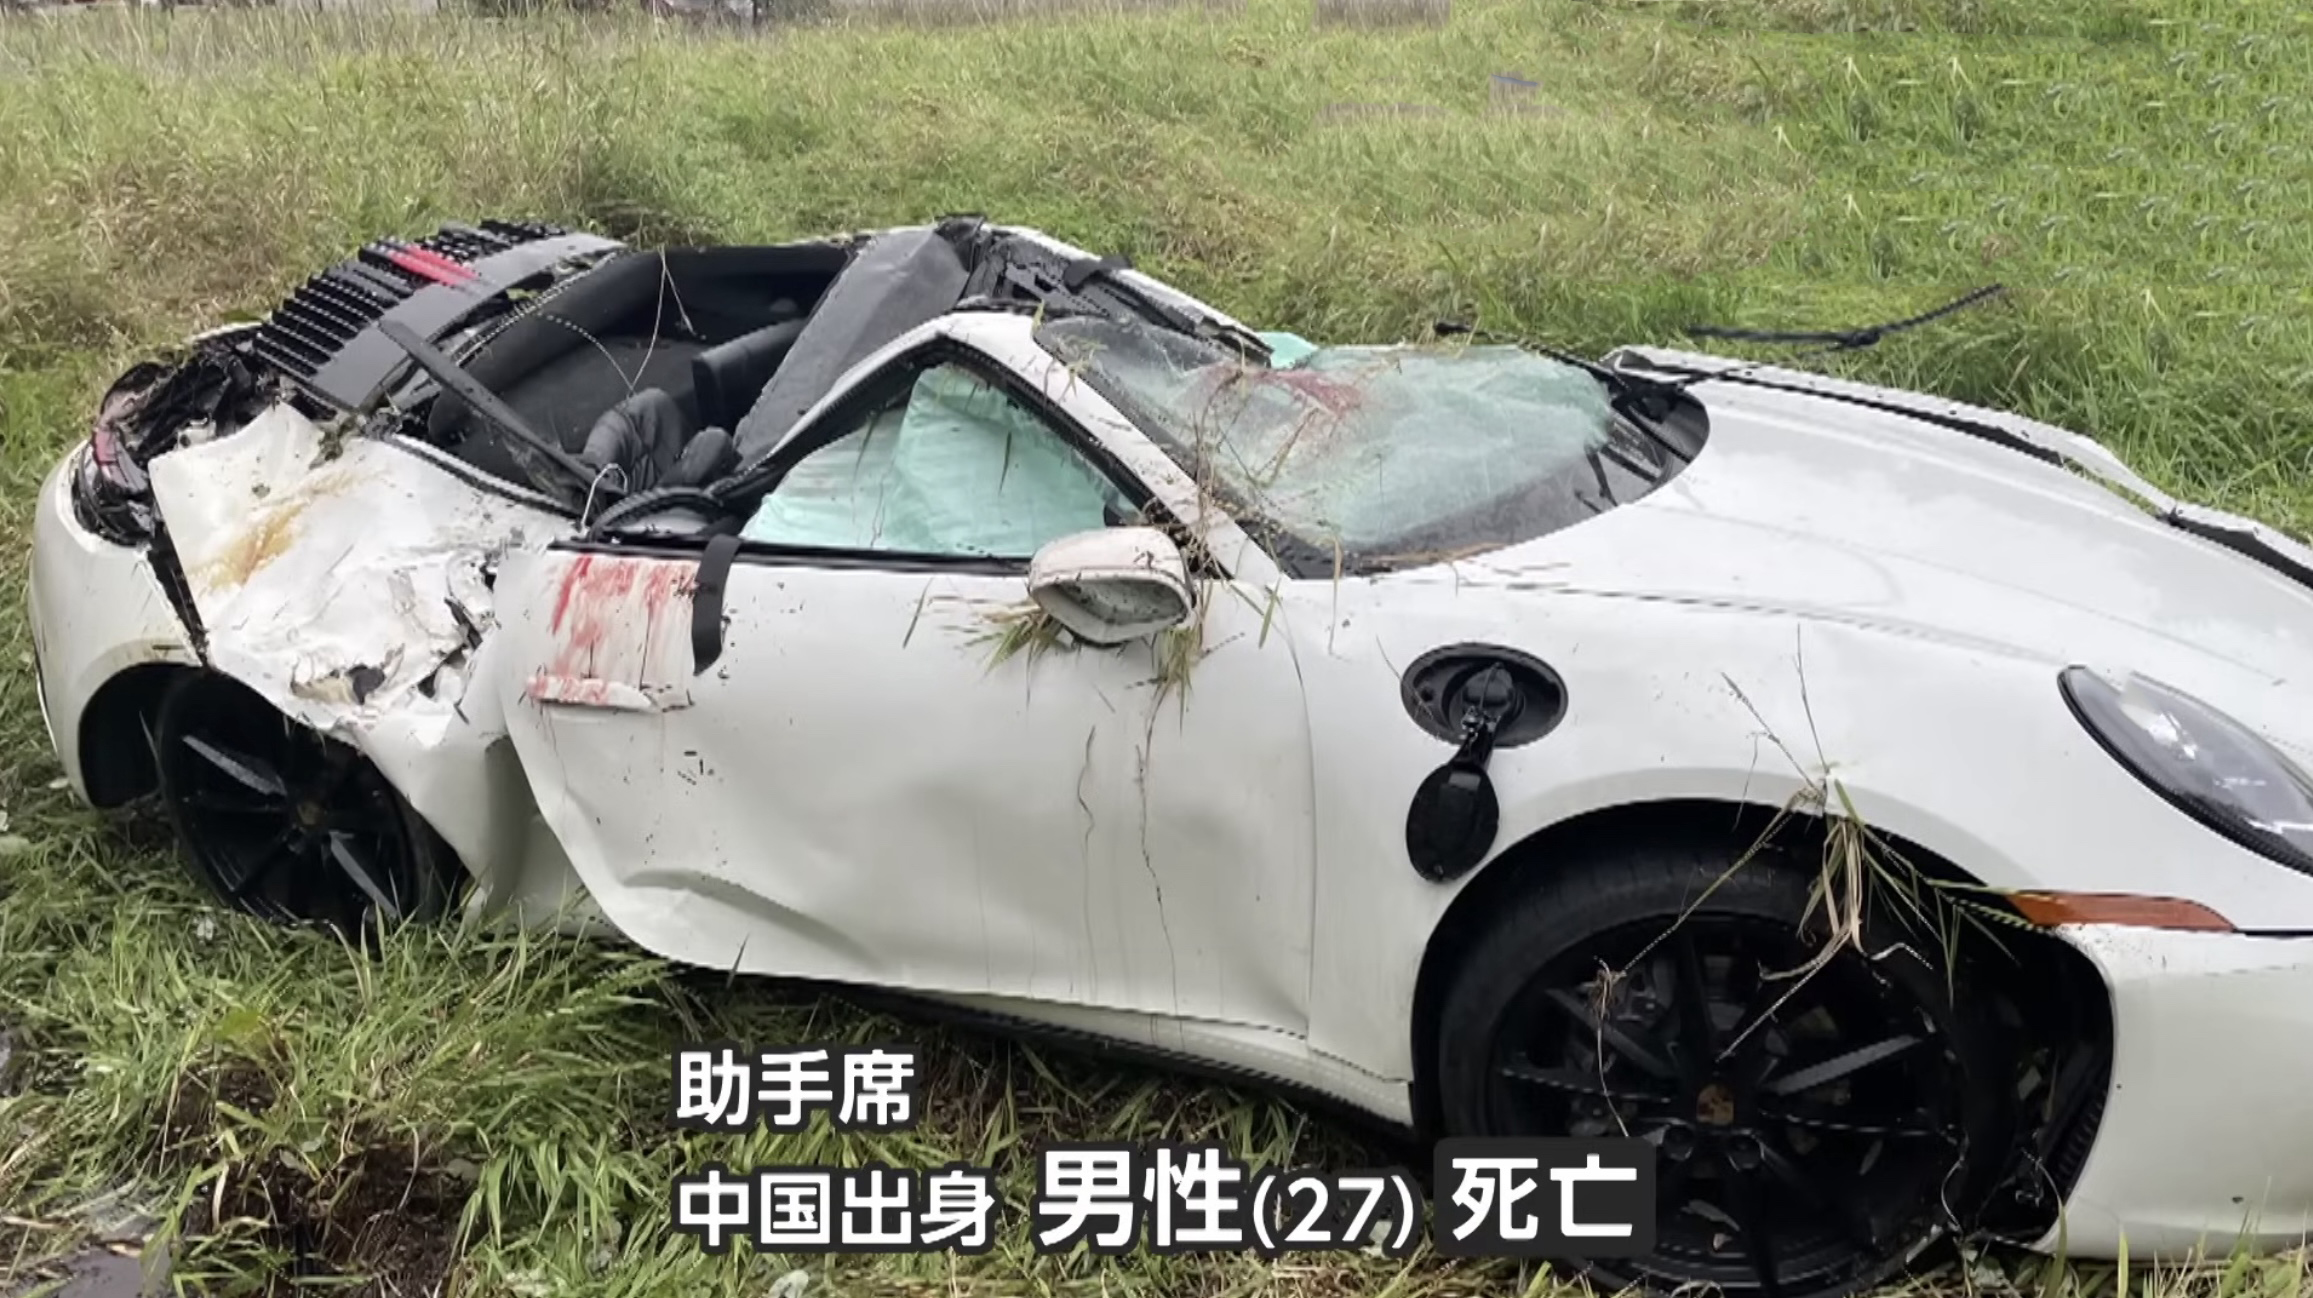 【動画】時速160km超 暴走ポルシェが激突事故、飲酒運転?の中国人女性ドライバーは逮捕前に出国